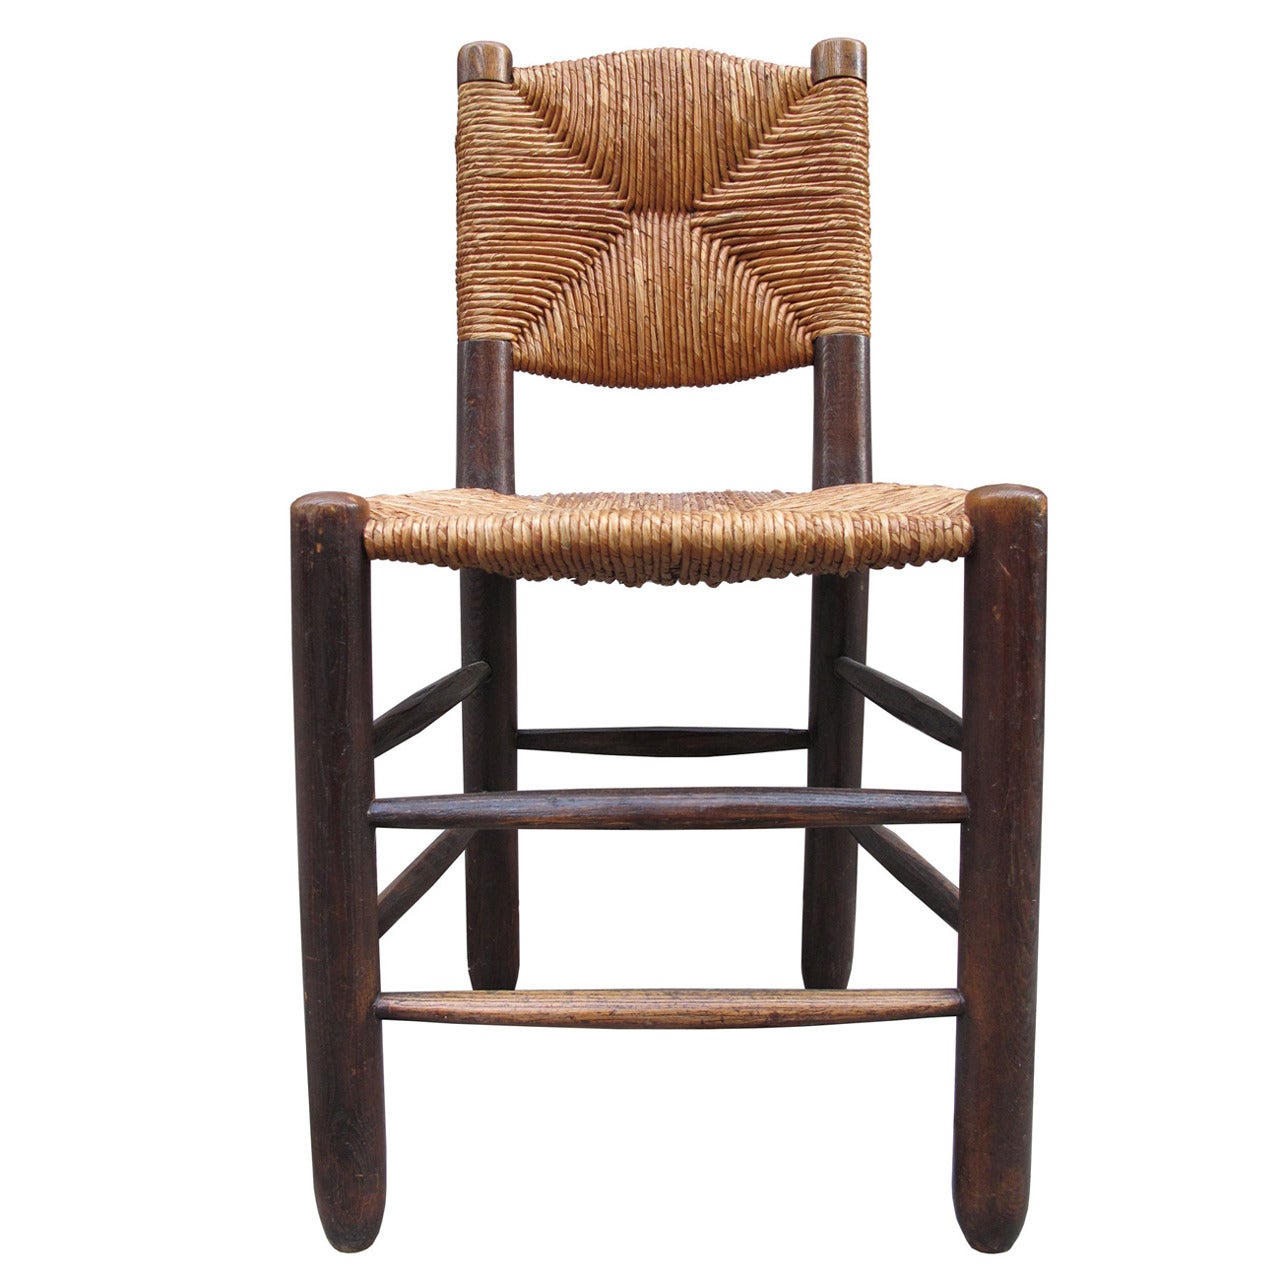 Charlotte Perriand "bauche" Chair 1946